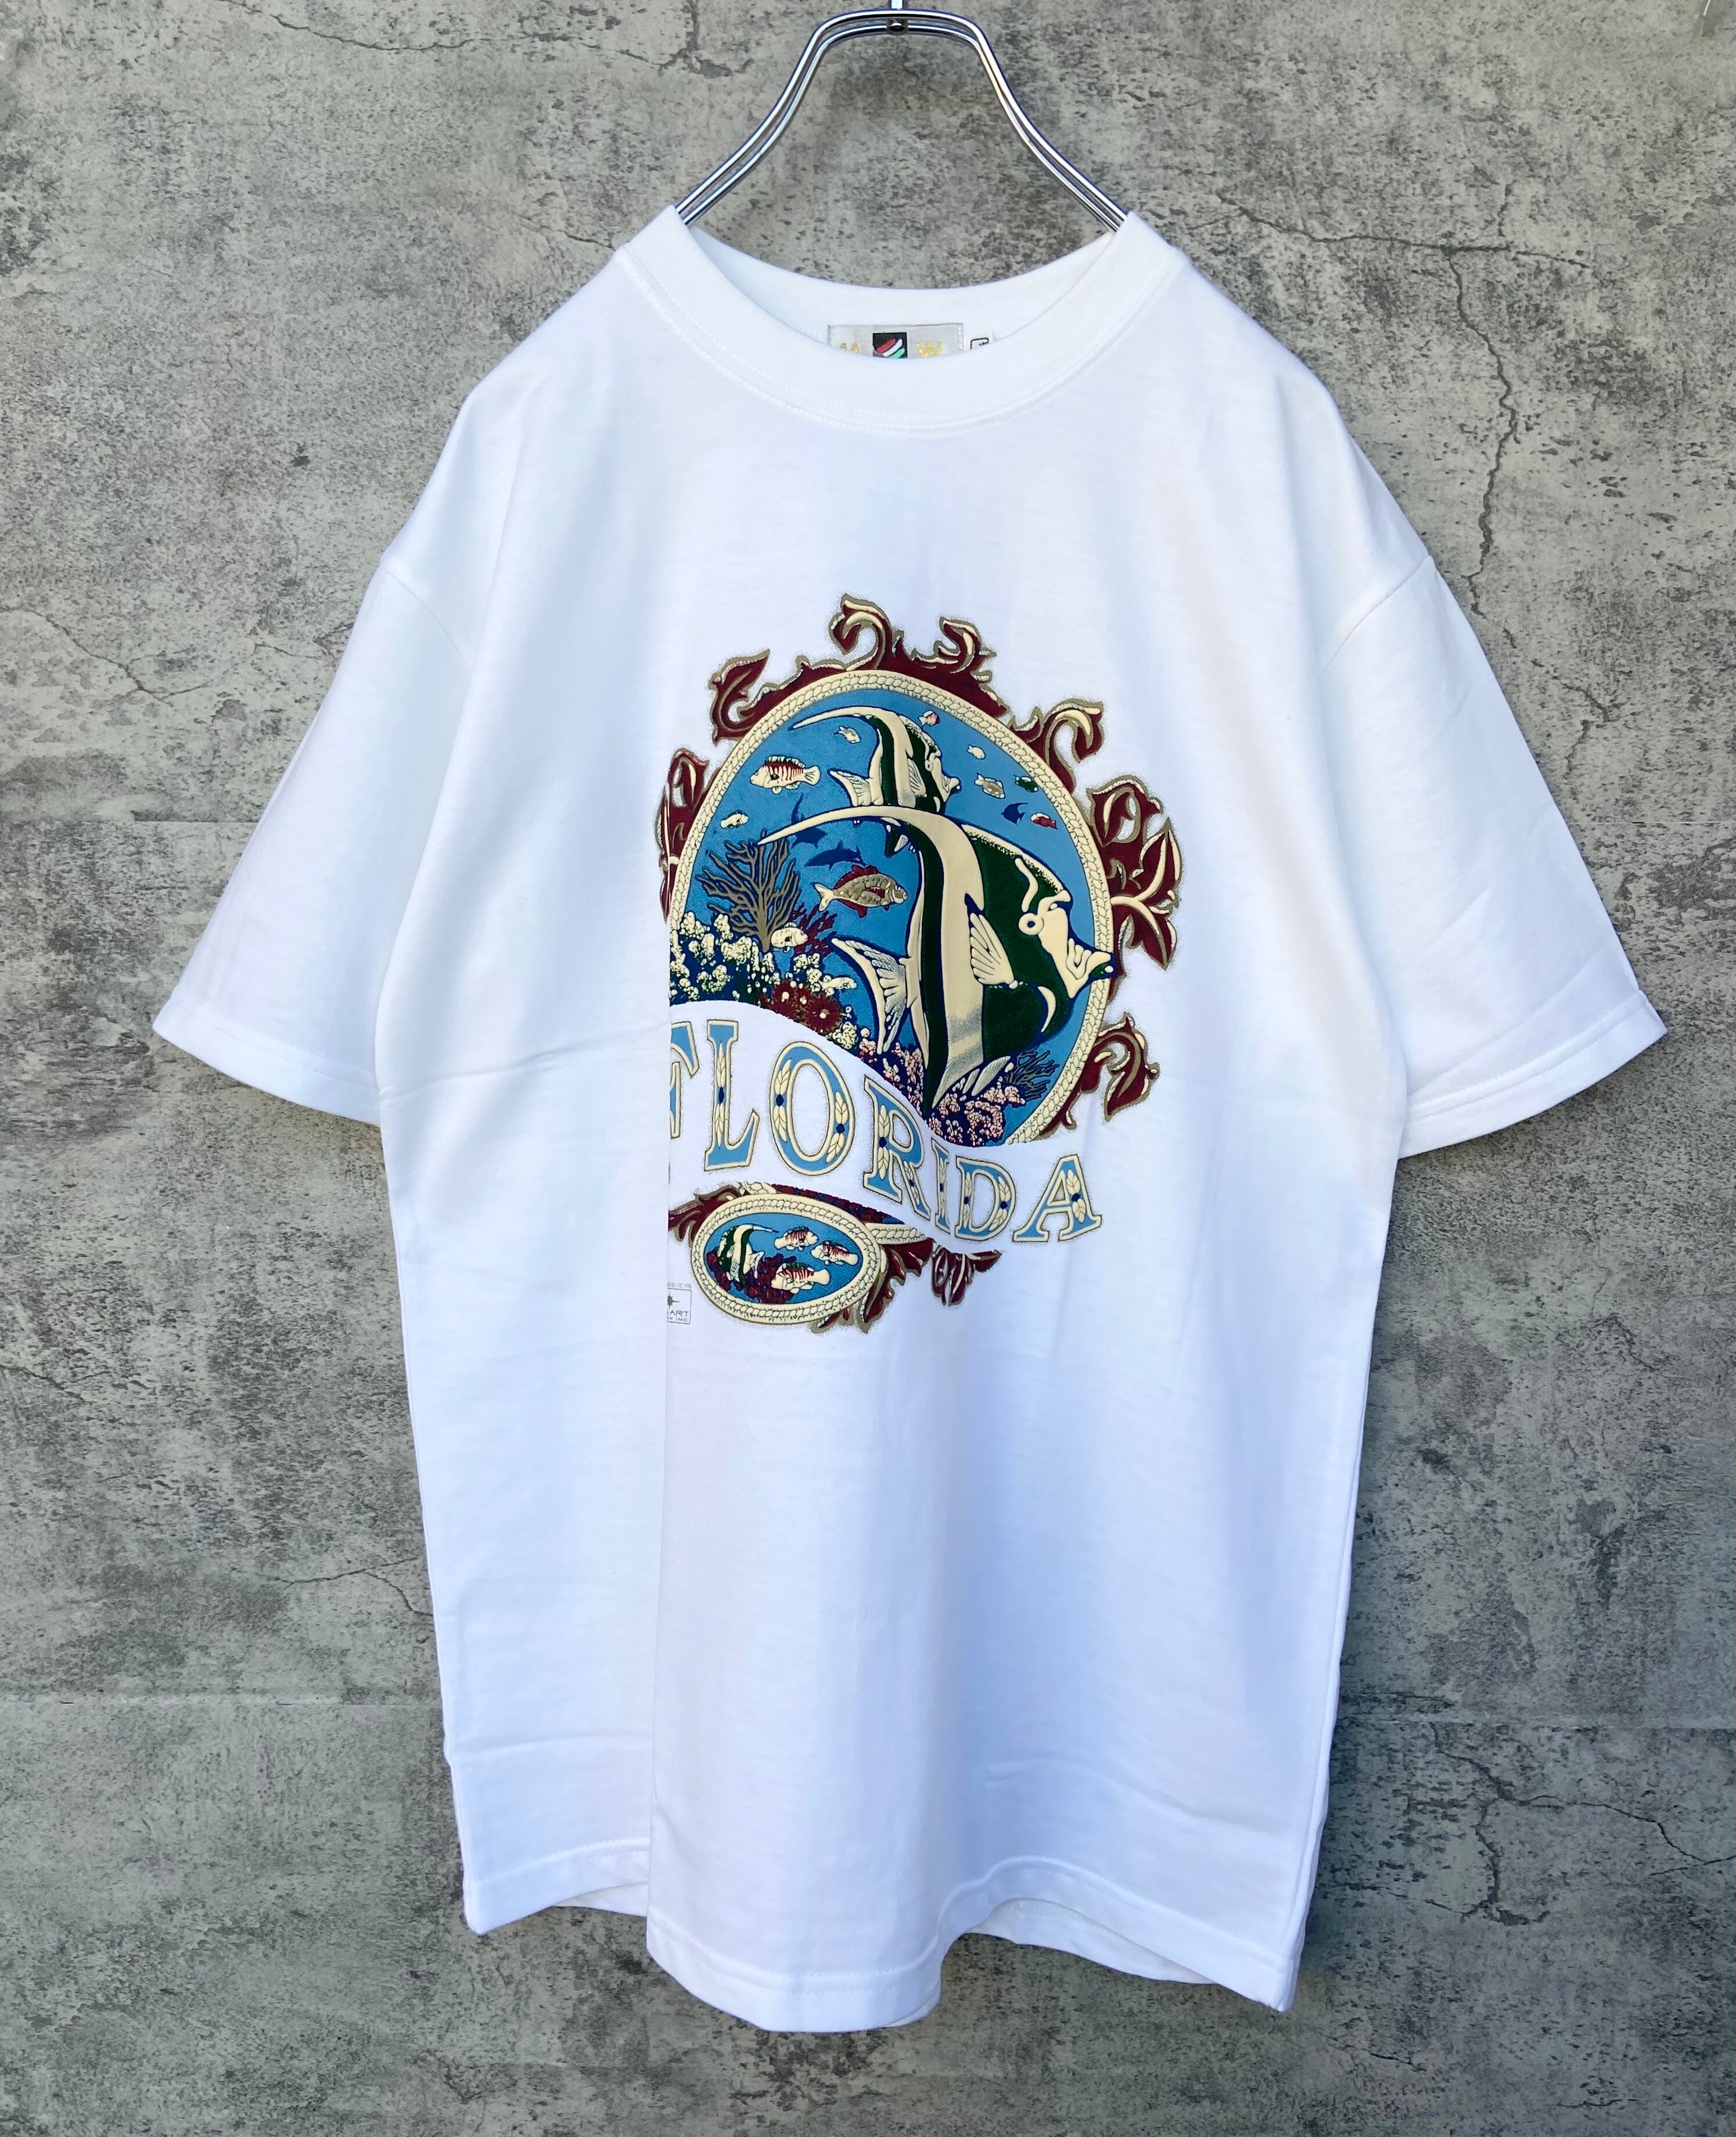 tee　90s　ヴィンテージ　Tシャツ/カットソー(半袖/袖なし)　Tシャツ　白T　コピーライト付き　vintage